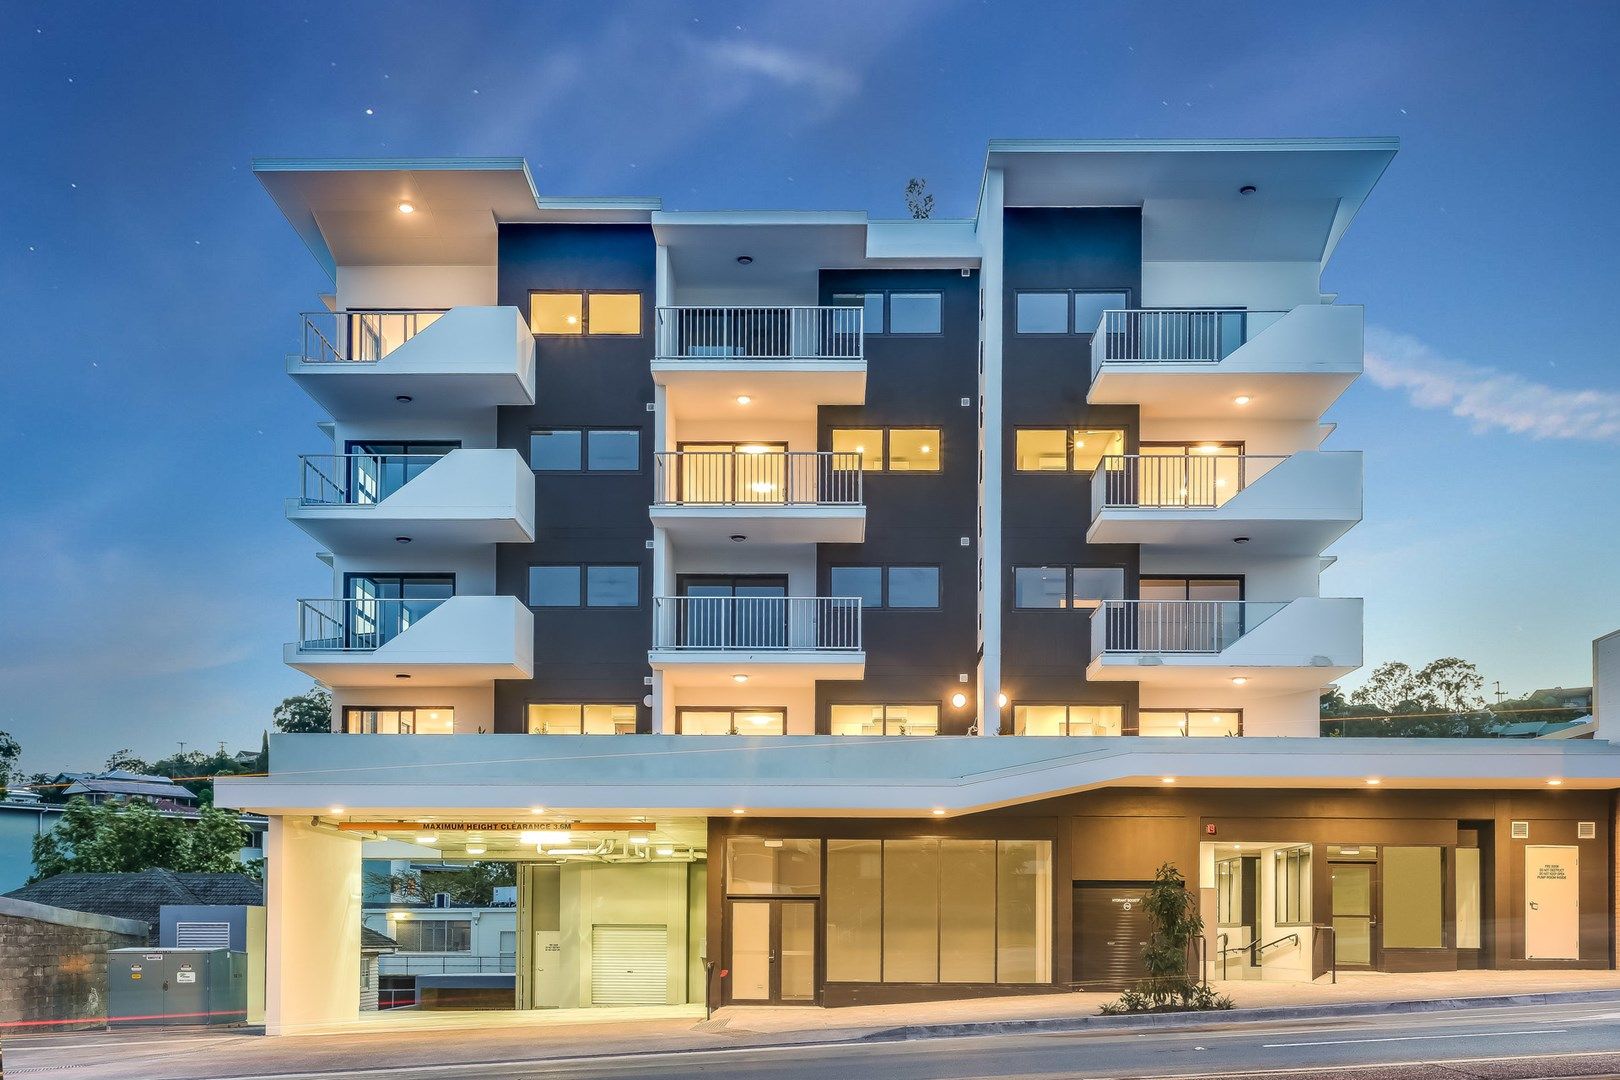 1 bedrooms Apartment / Unit / Flat in 452-454 Enoggera Road ALDERLEY QLD, 4051